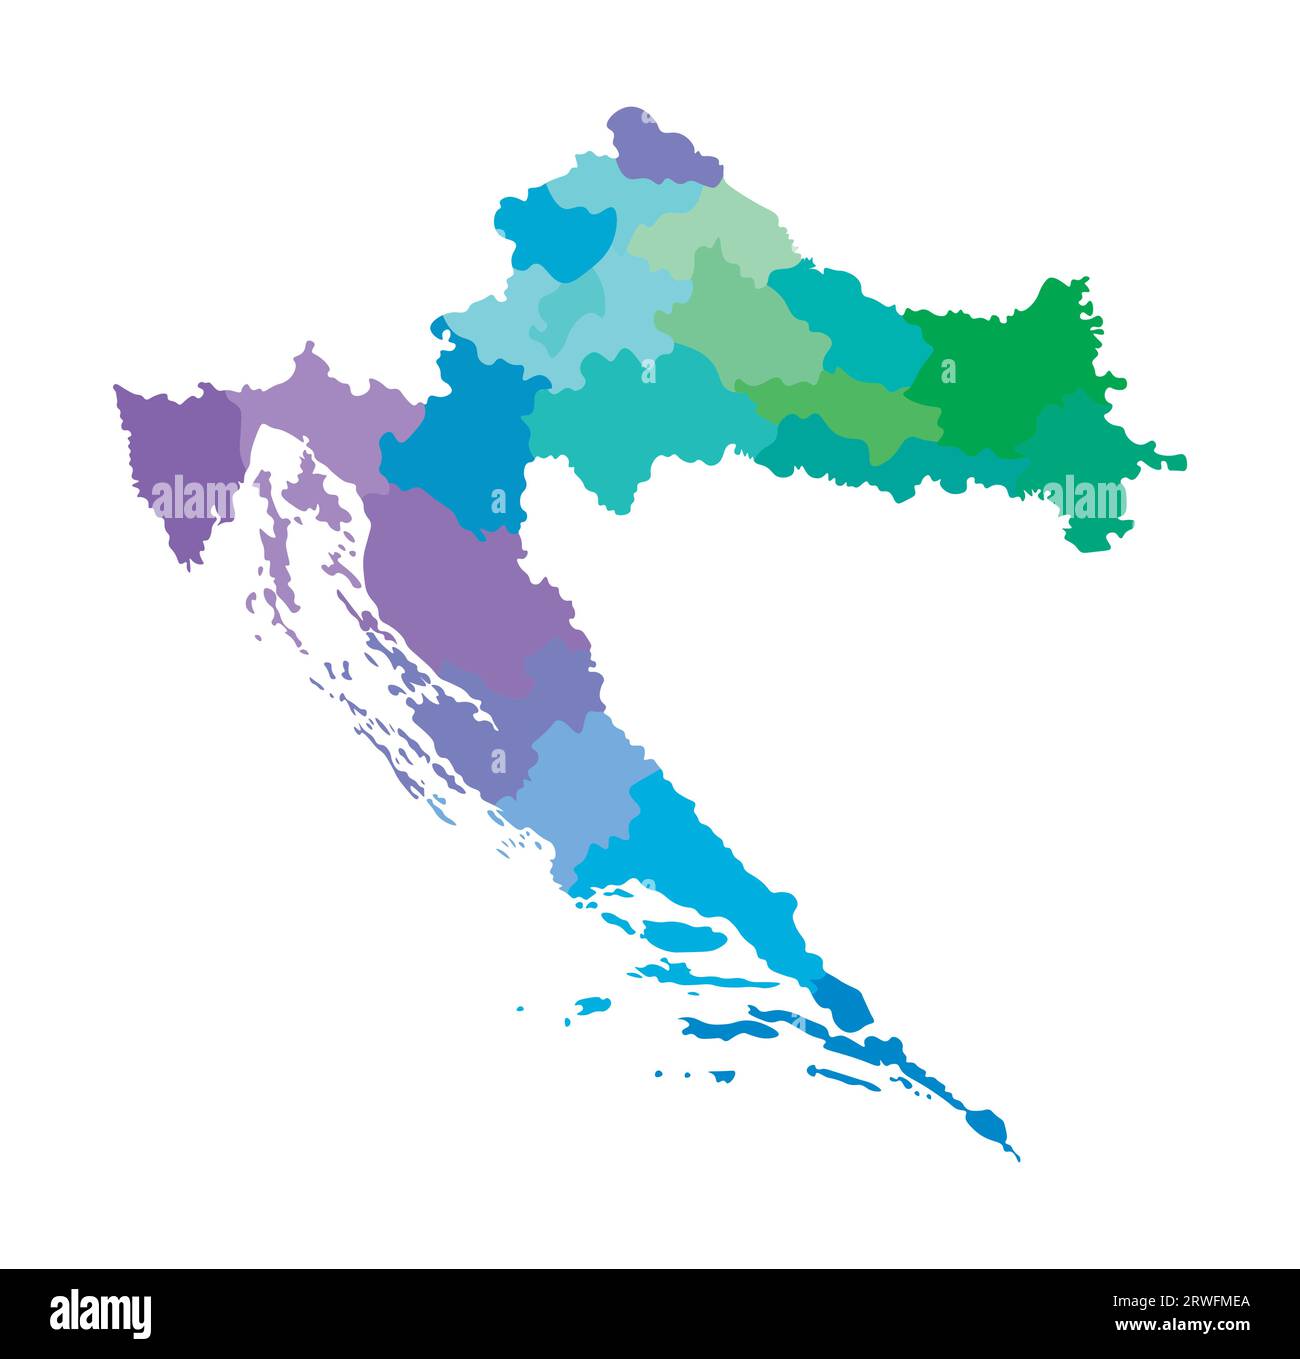 Vektor-isolierte Illustration einer vereinfachten Verwaltungskarte Kroatiens. Grenzen der Regionen. Mehrfarbige Silhouetten. Stock Vektor